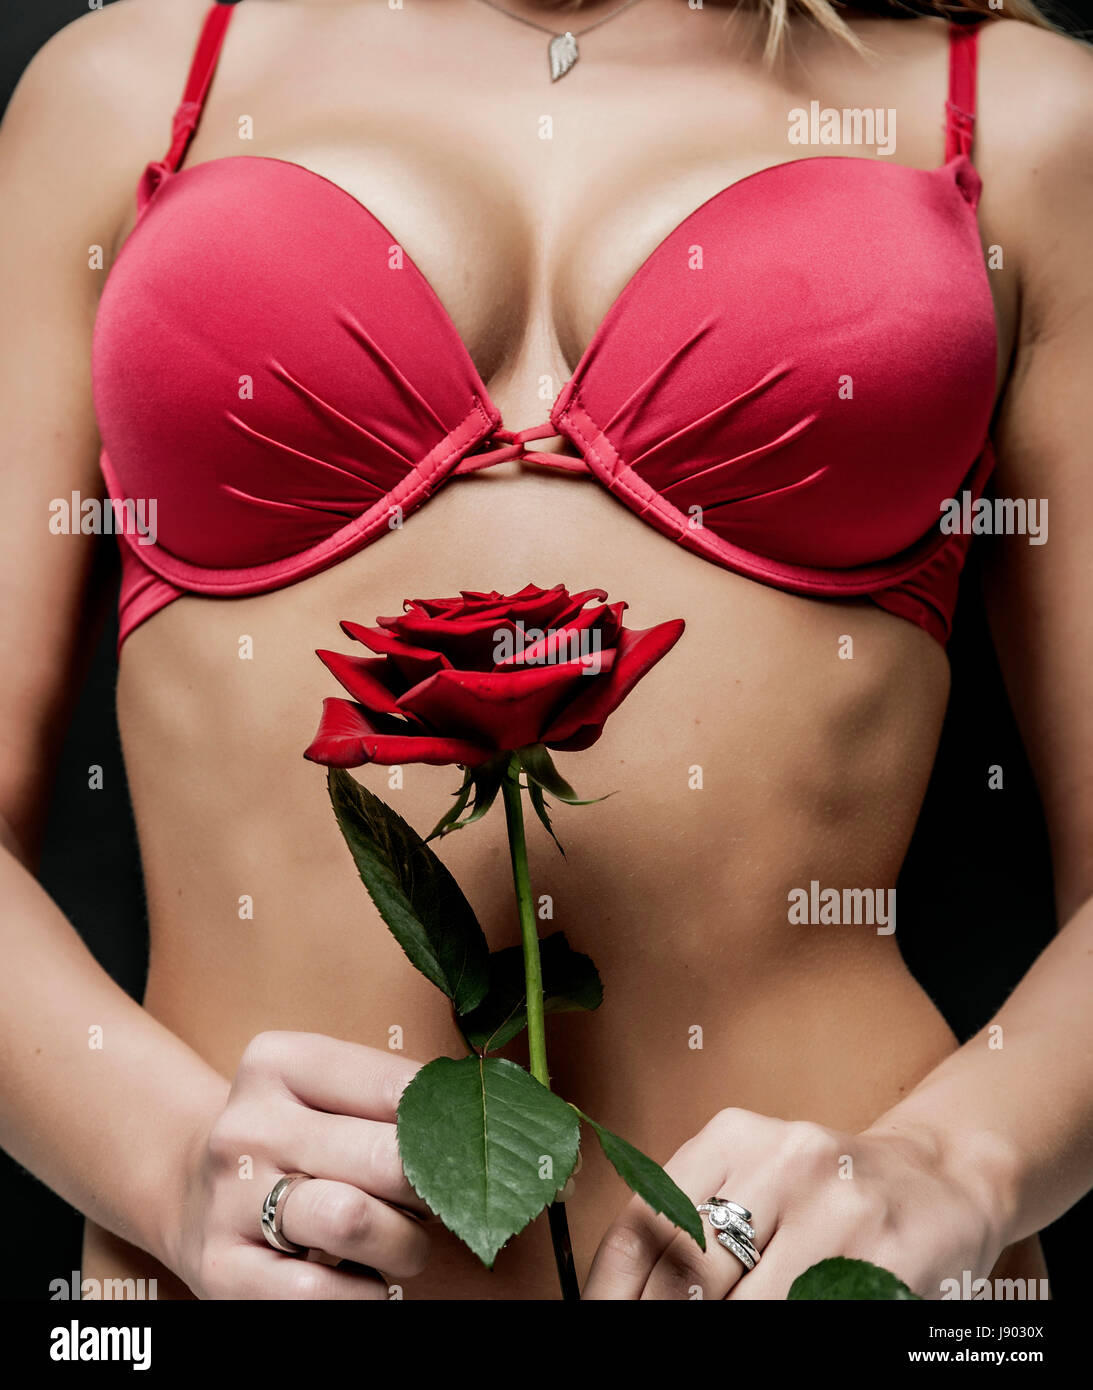 weibliche Brust mit roter rose Stockfoto